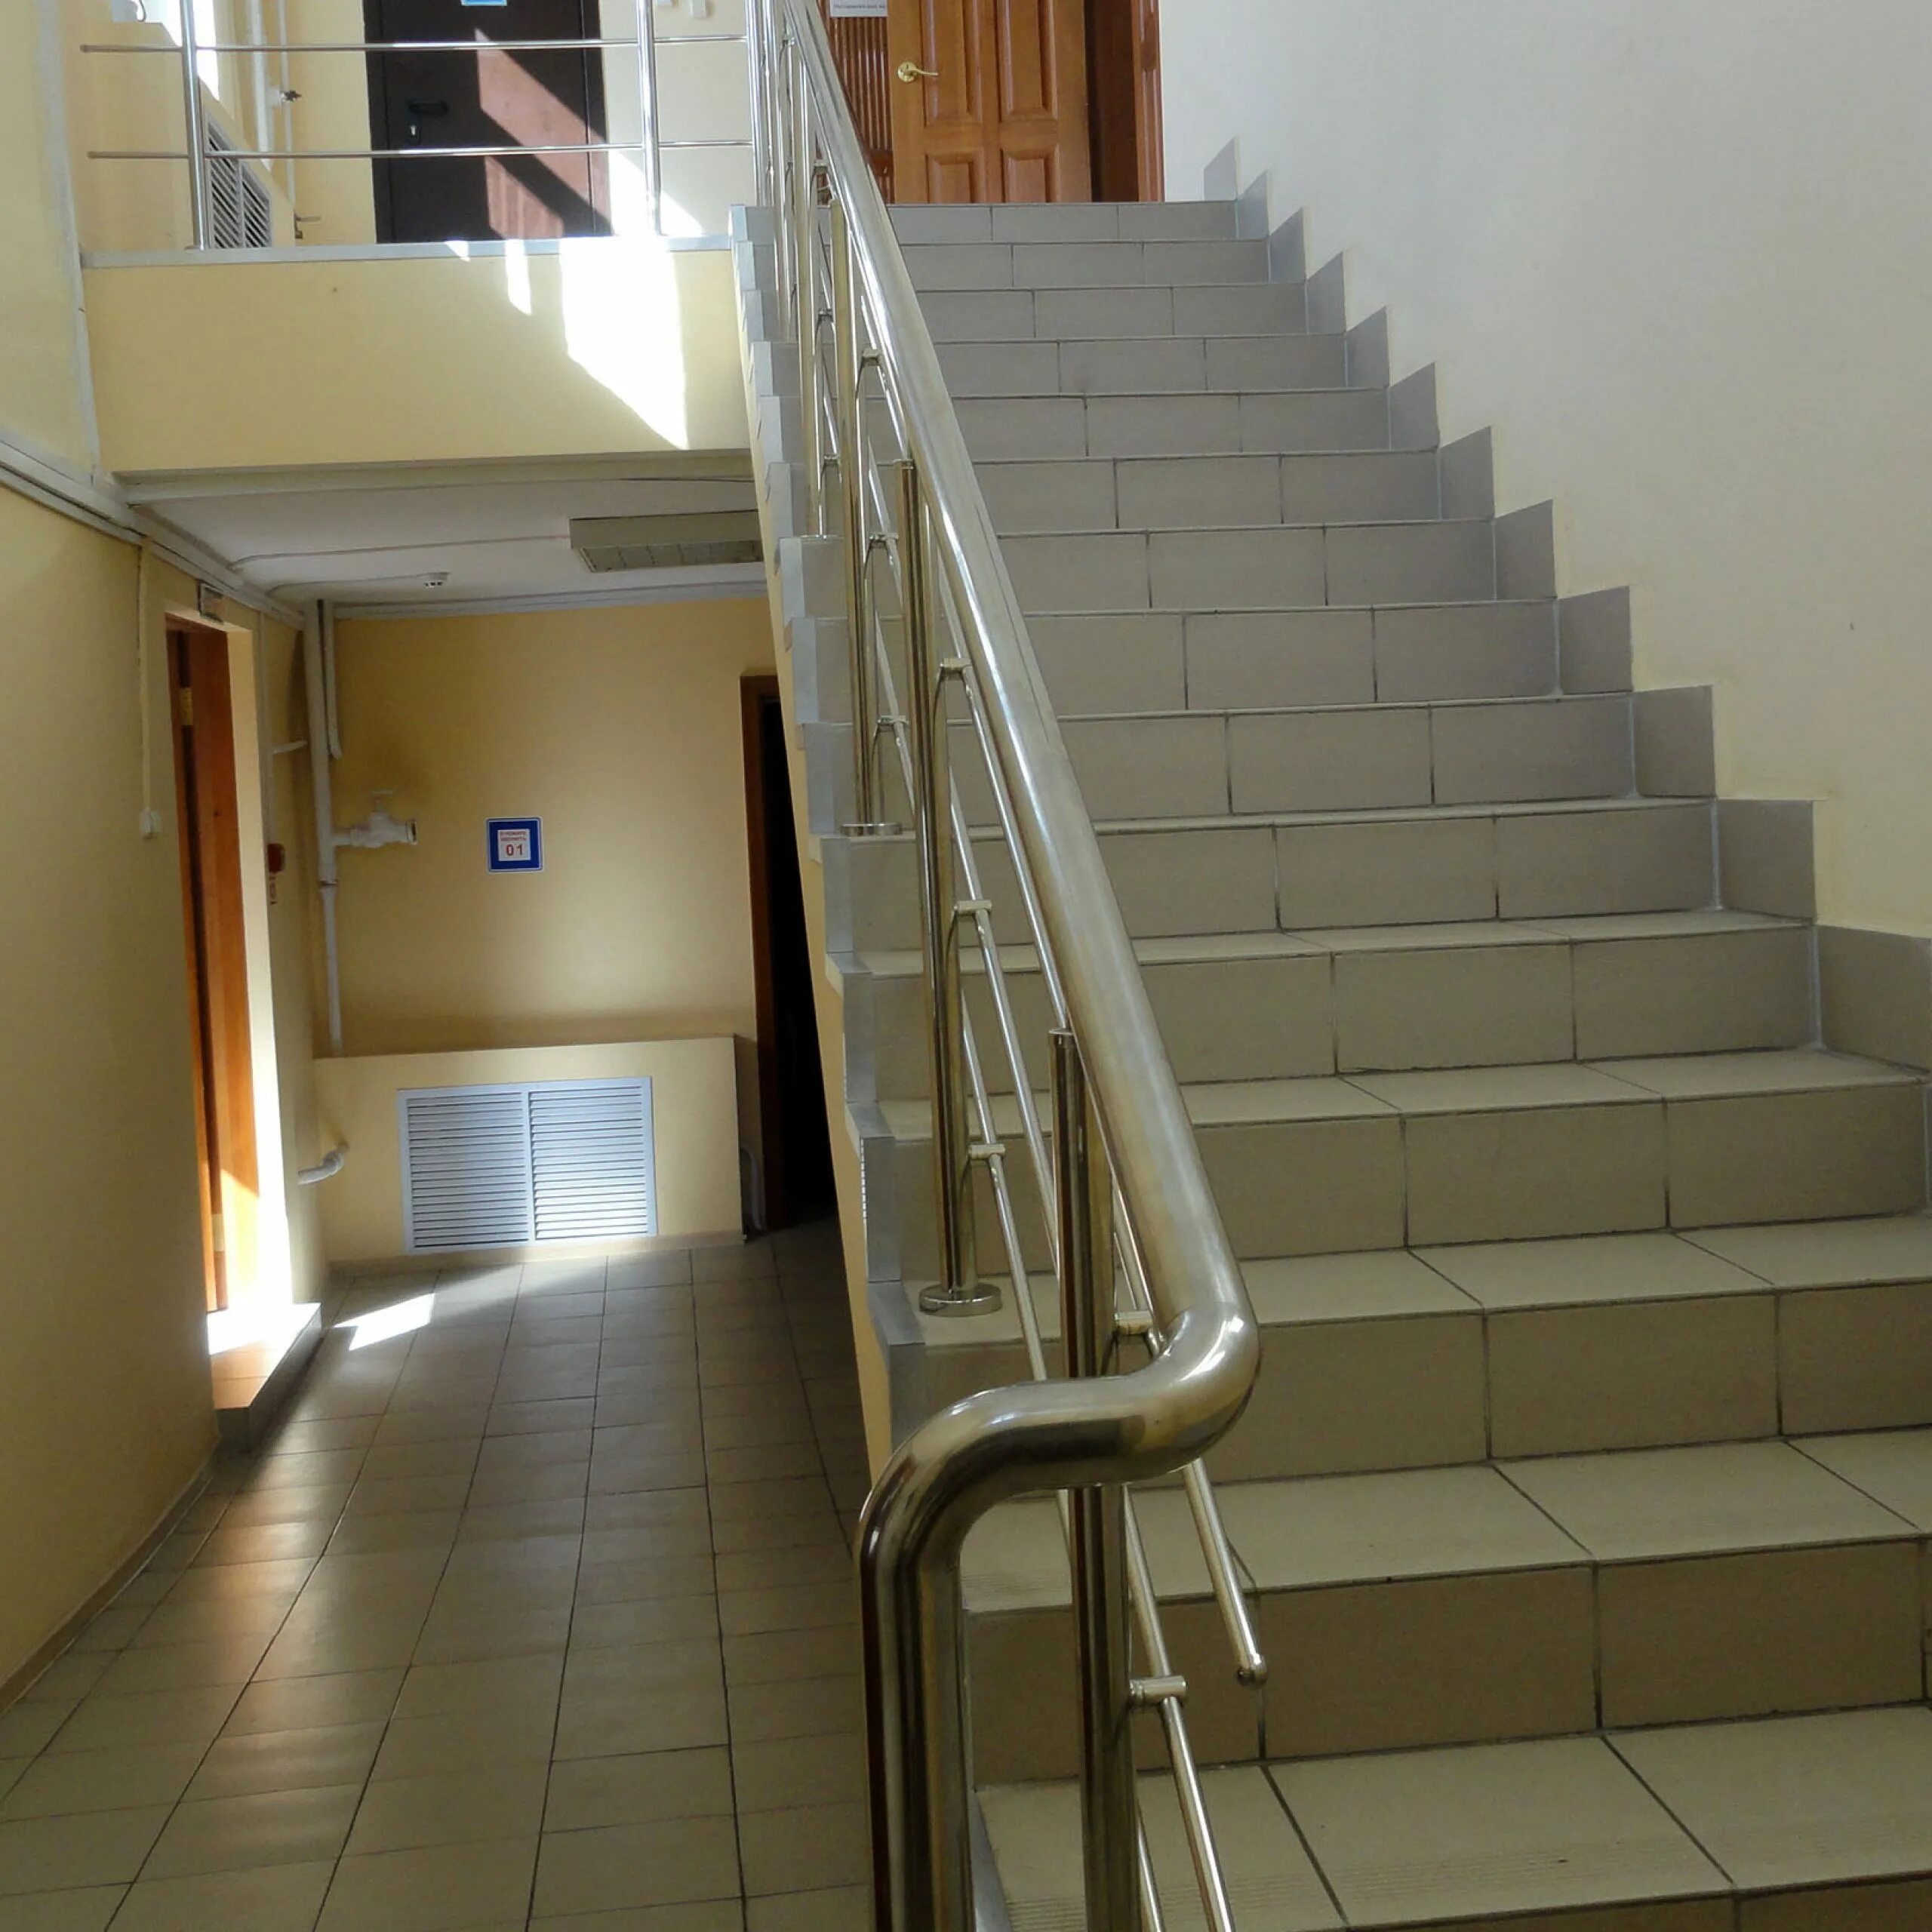 Второй этаж в школе. Лестница в школе. Лестница в больнице. Лестница в многоквартирном доме. Лестничный пролет в подъезде.